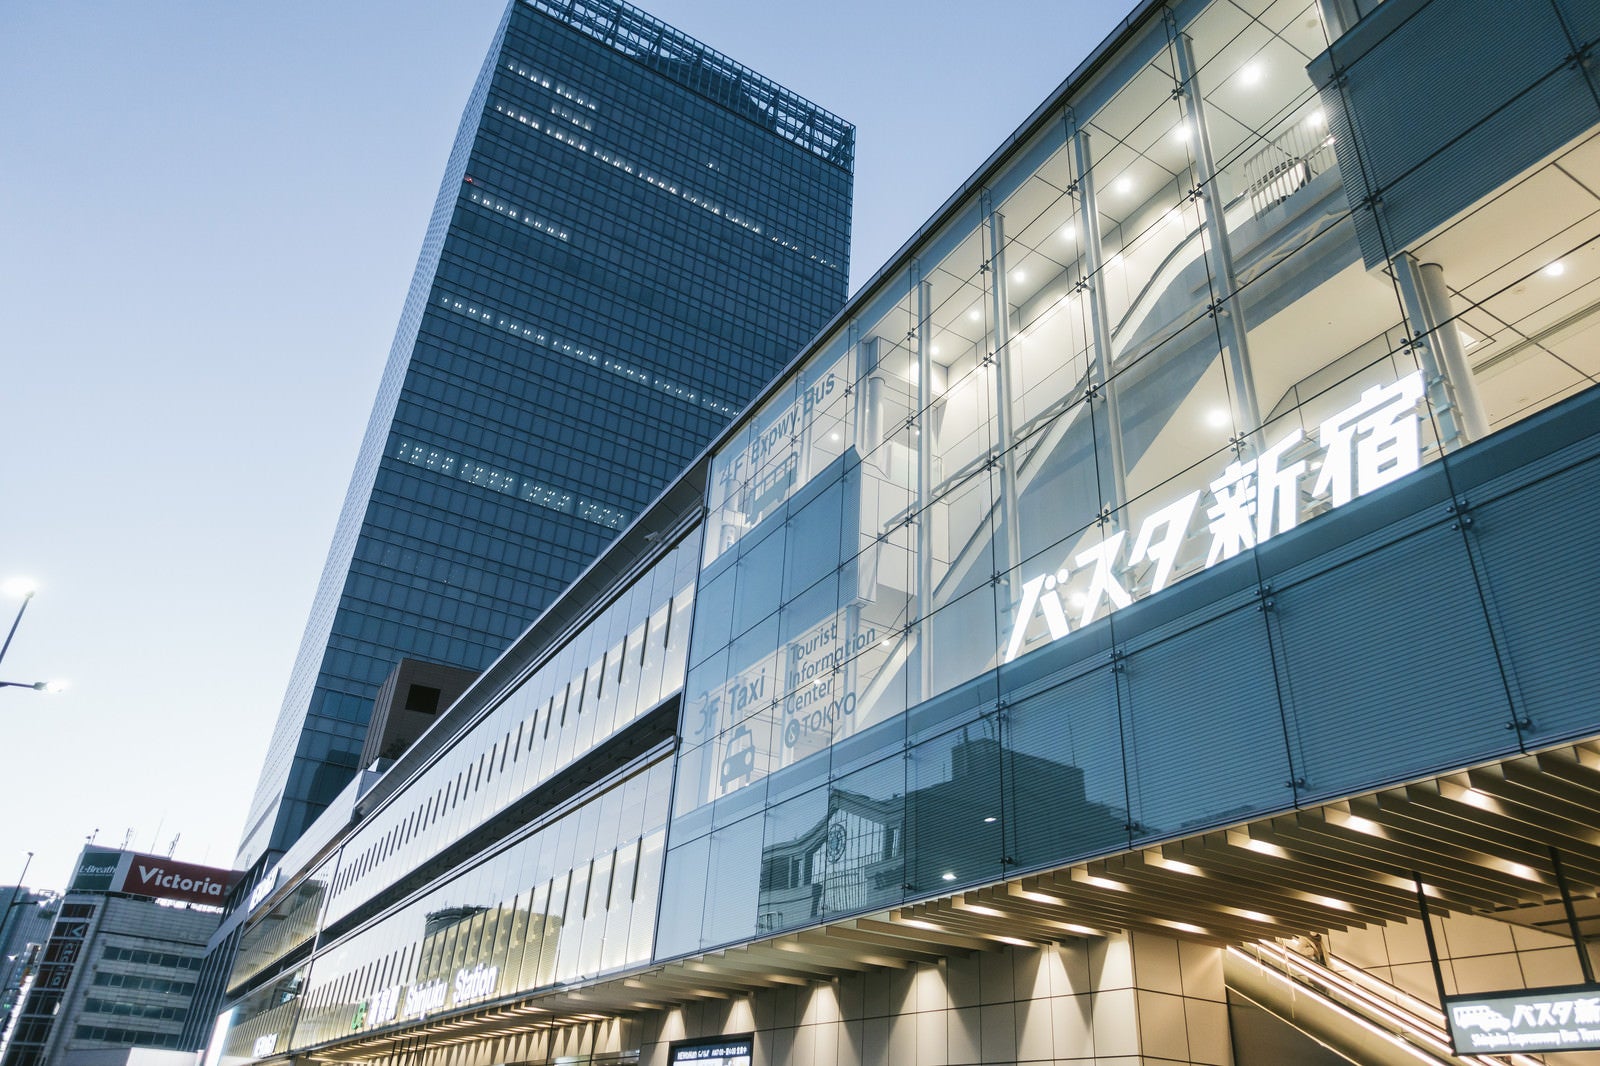 「バスタ新宿駅」の写真